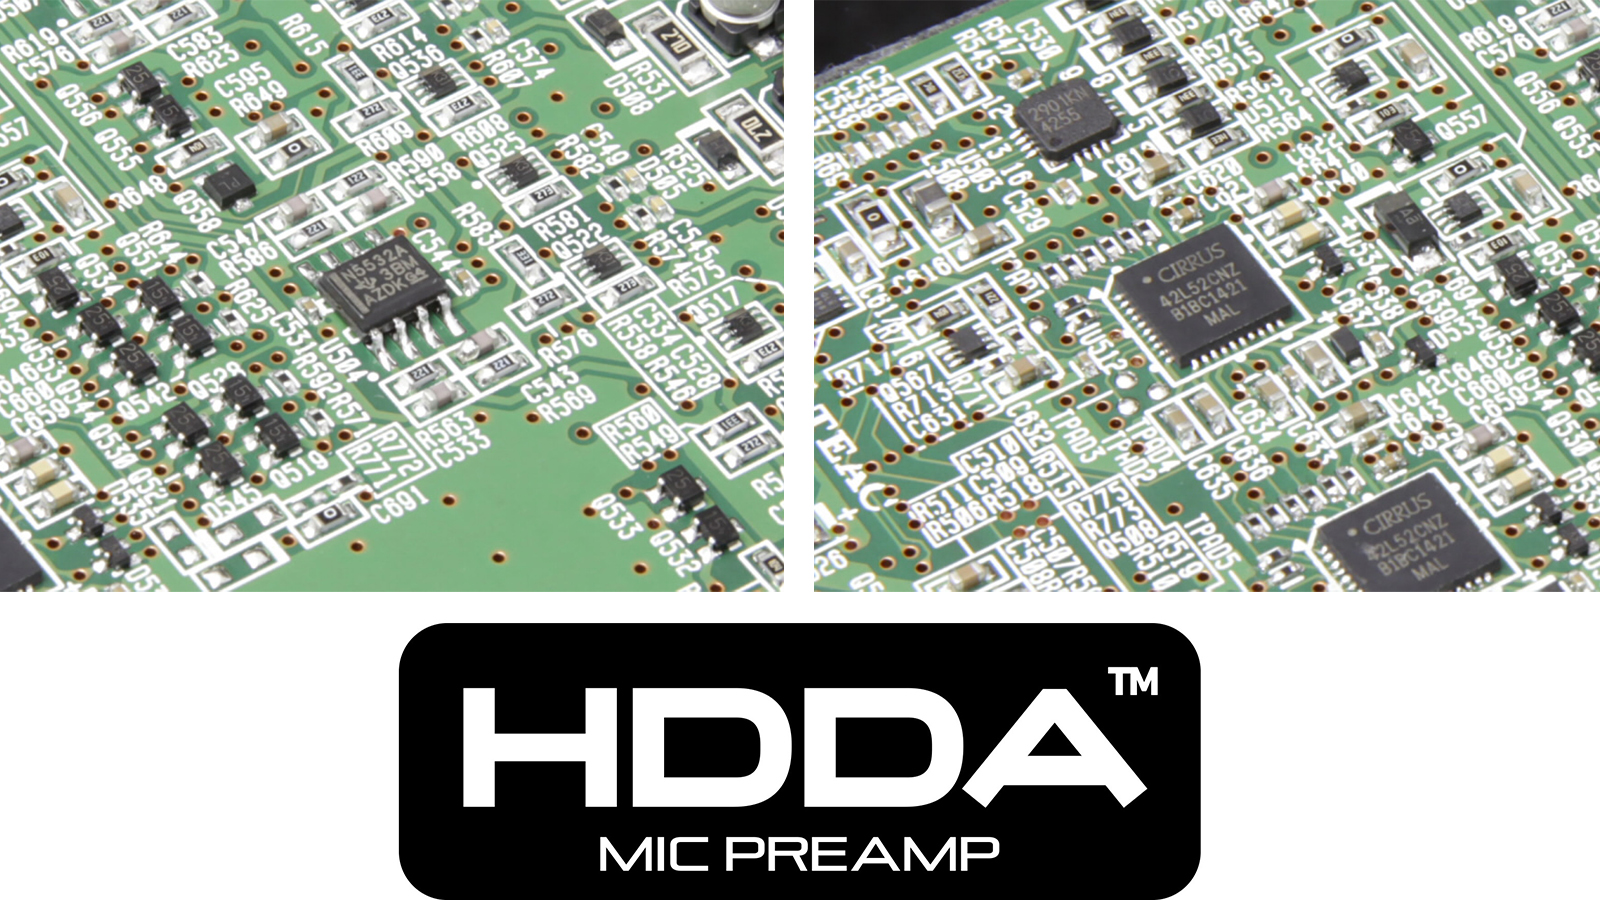 HDDA (High Definition Discrete Architecture) mic preamps